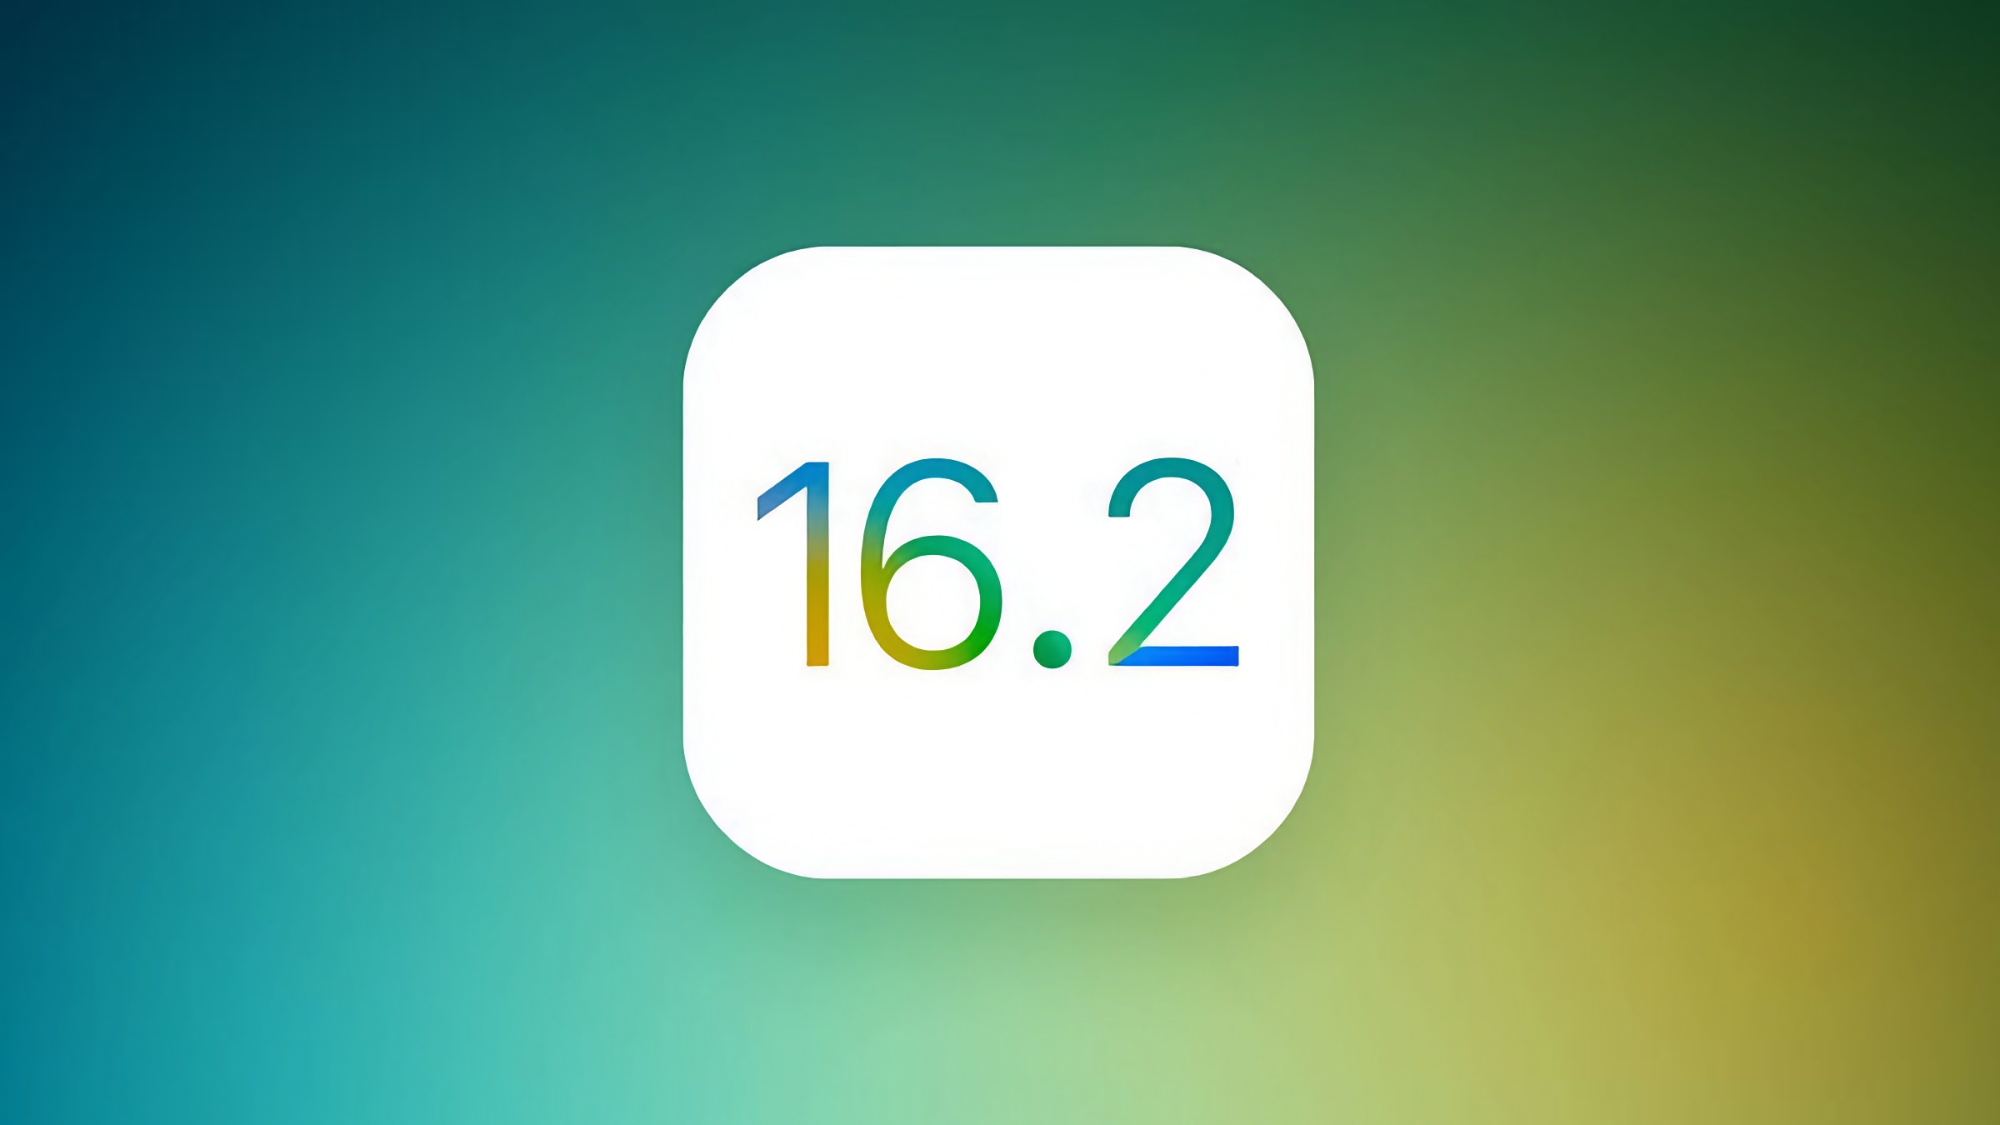 Apple a lancé la version candidate d'iOS 16.2 avec de nombreux changements mineurs mais utiles.